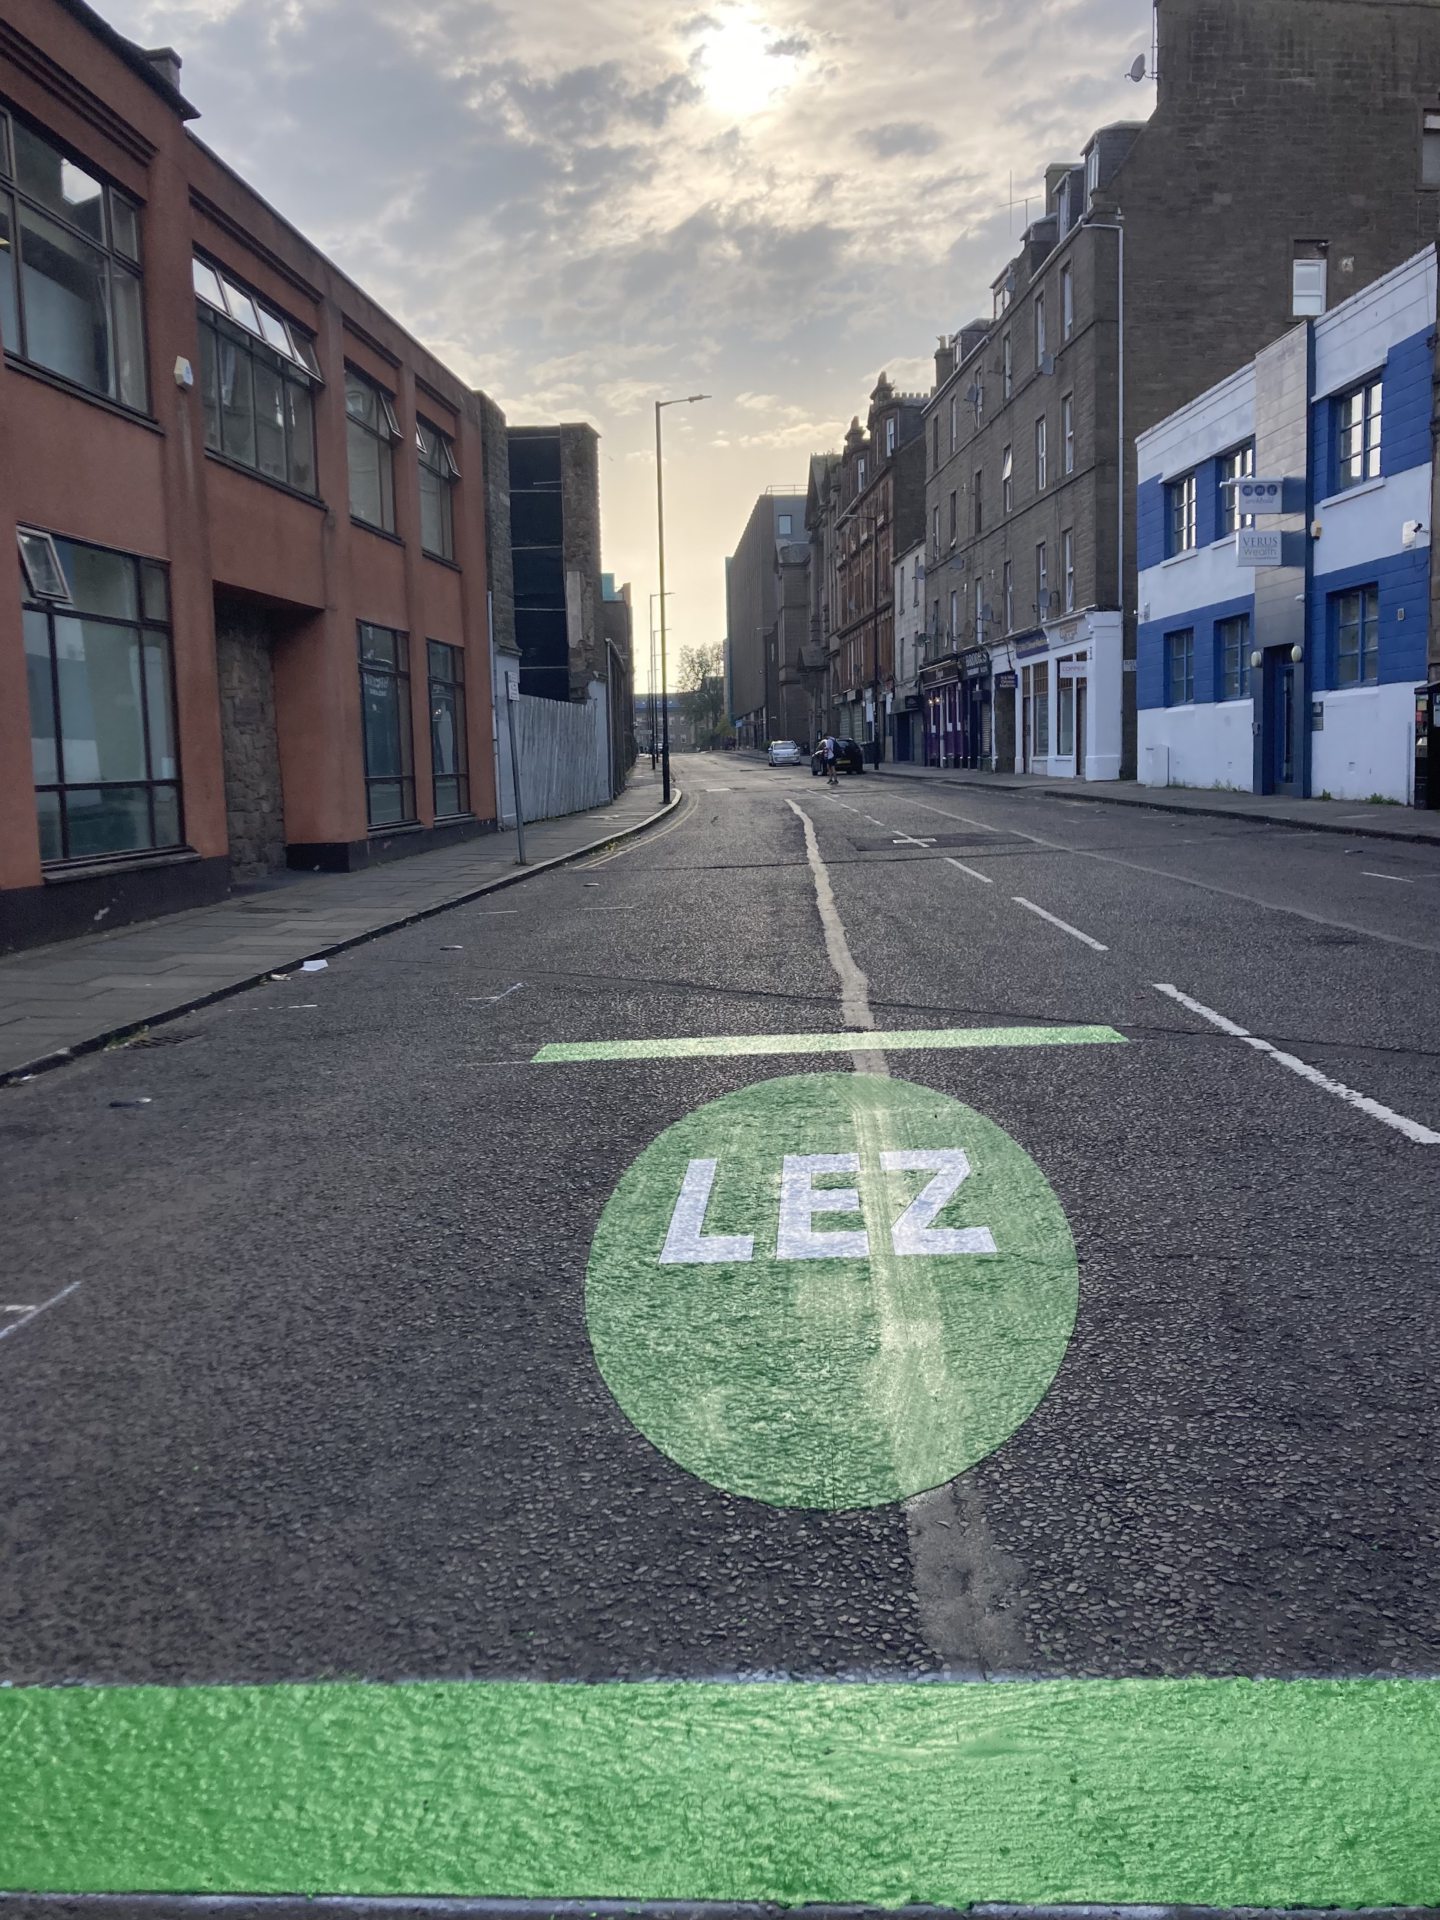 LEZ markings on Bell Street.